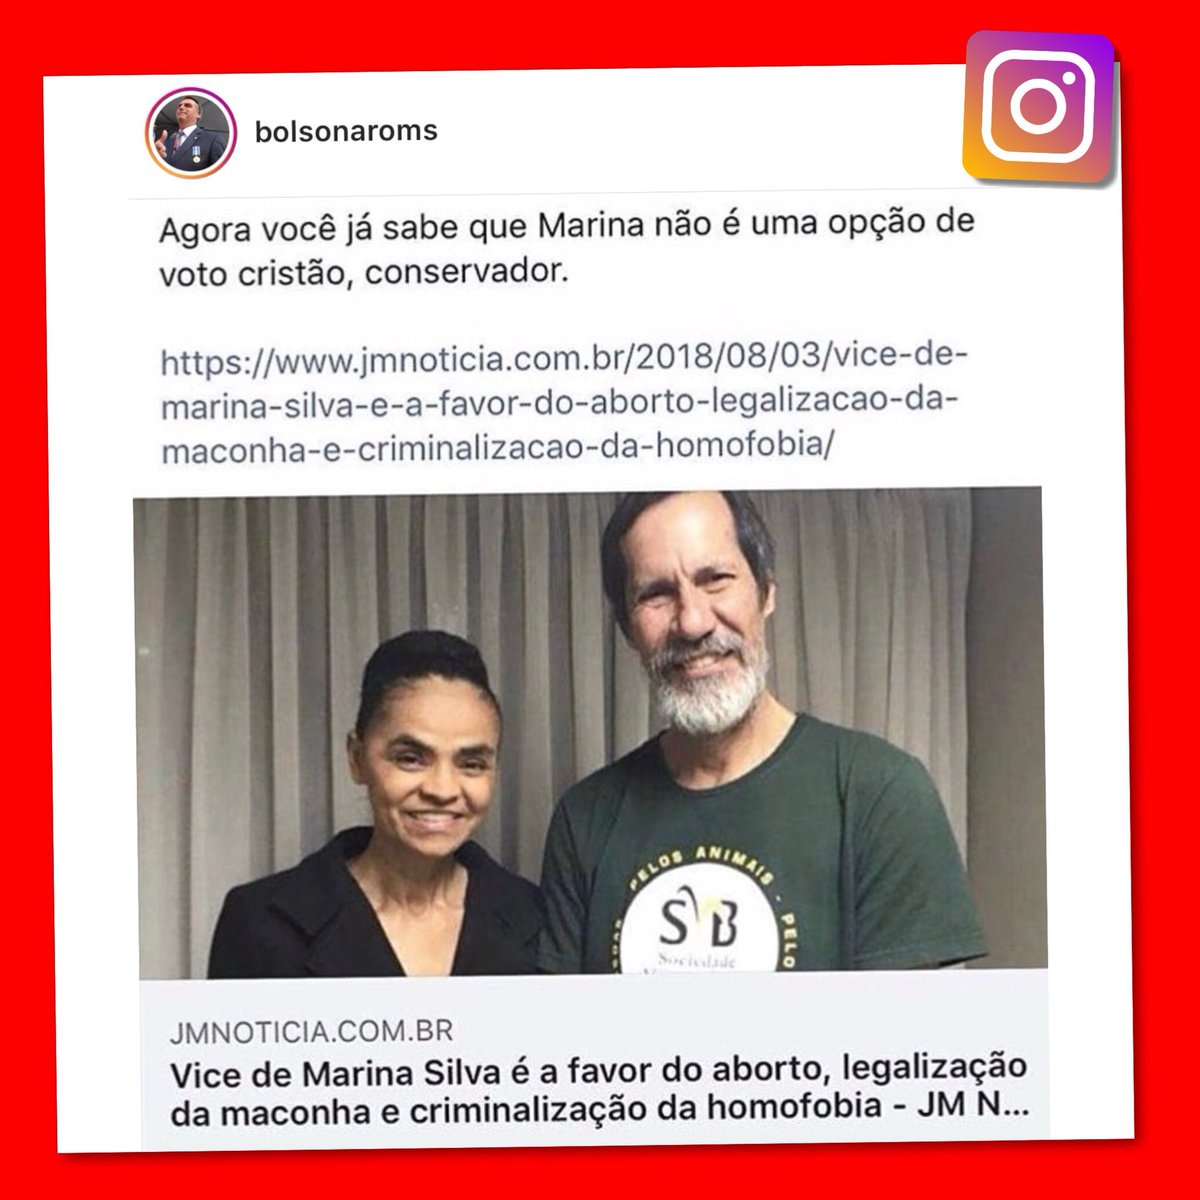 Você sabia que o vice de Marina Silva é a favor do aborto, legalização da maconha e criminalização da “homofobia”?